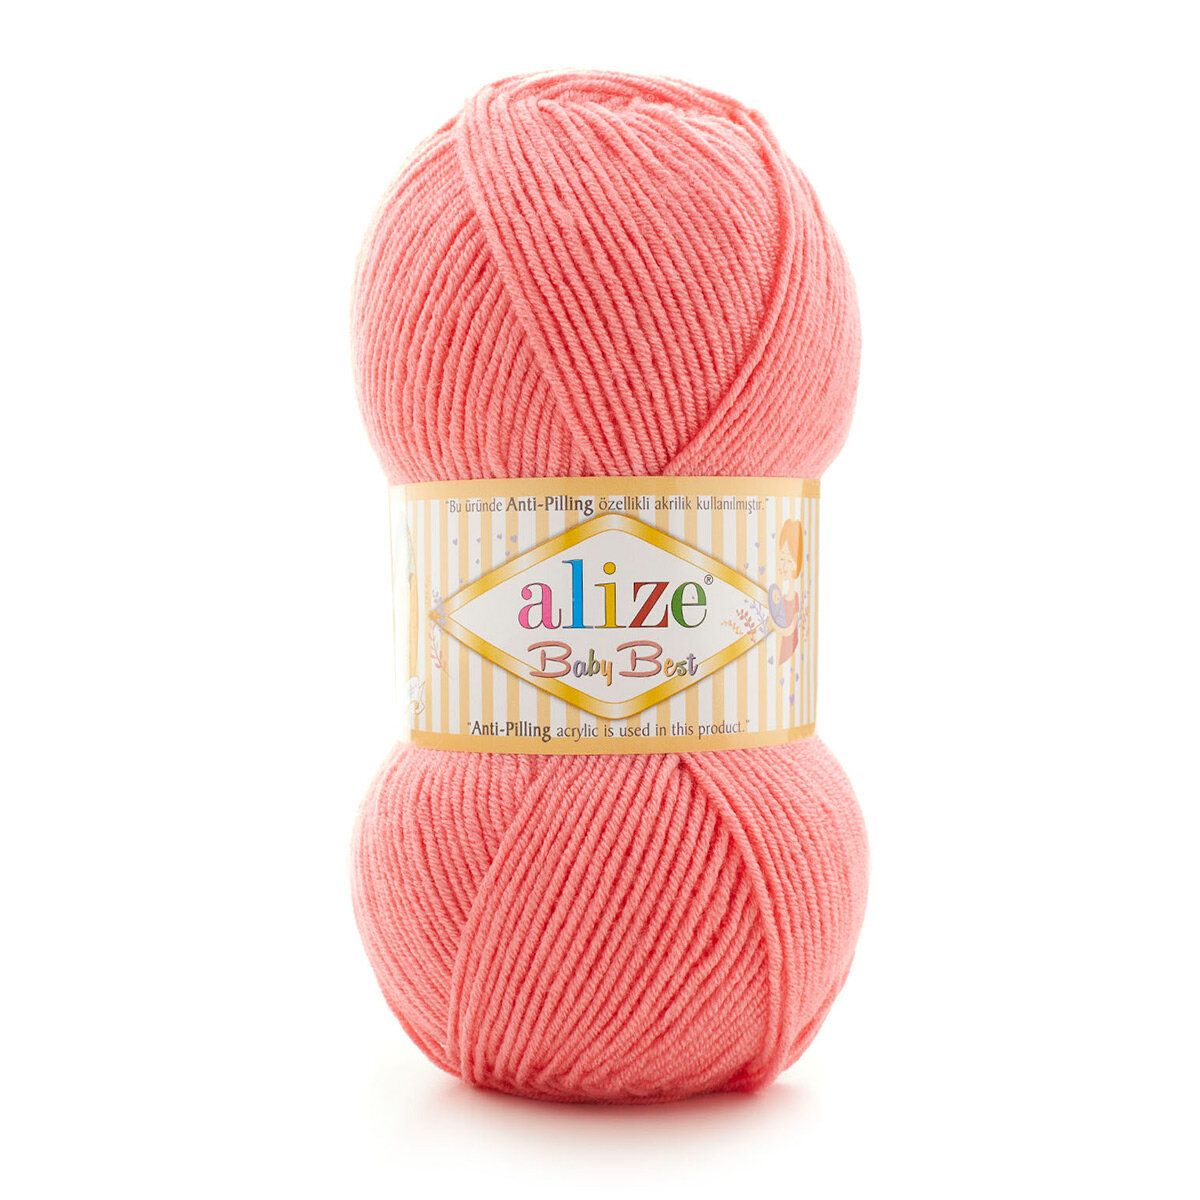 Пряжа для вязания ALIZE 'Baby Best', 100г, 240м (10% бамбук, 90% акрил) с эффектом Антипиллинг (170 розовый), 5 мотков